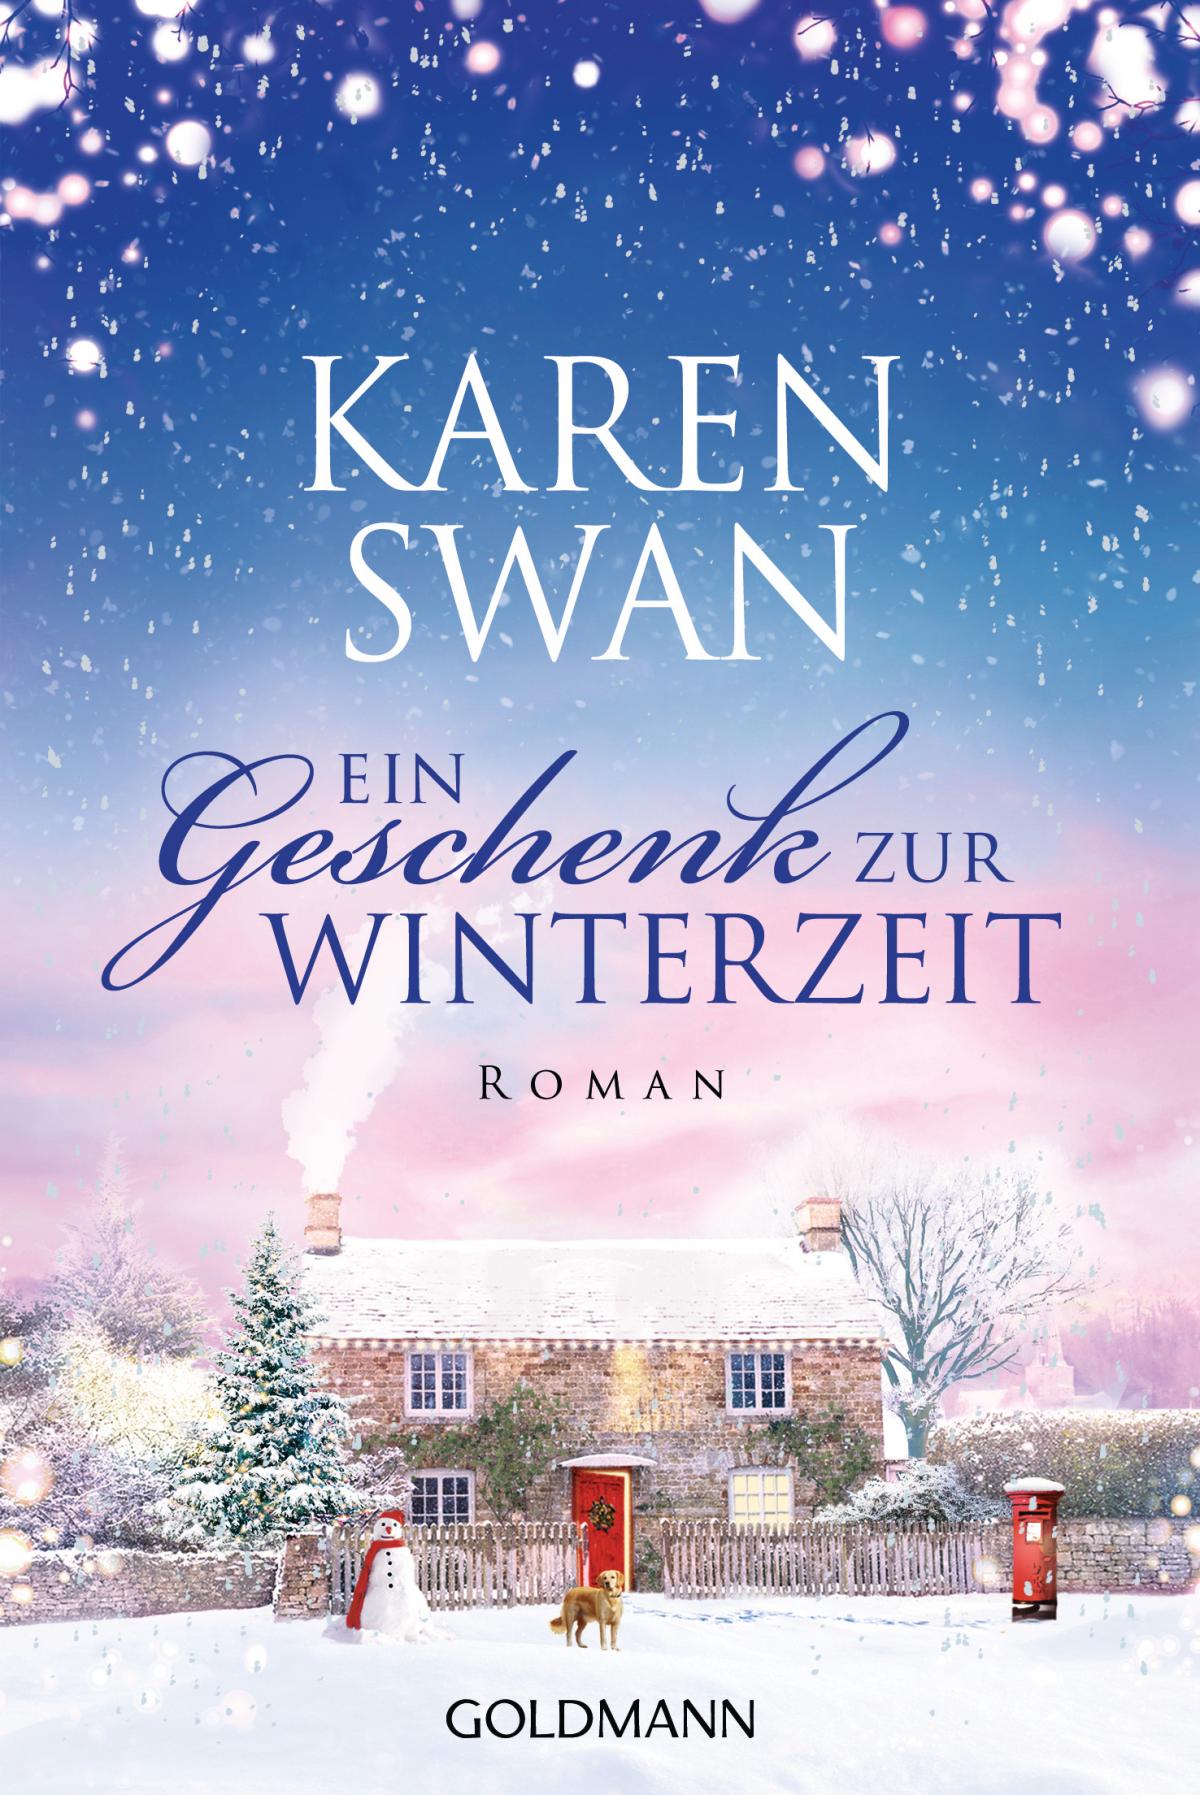 Ein Geschenk zur Winterzeit von Karen Swan - 978-3-641-30571-0 - Meritas by  Melanie Hofinger